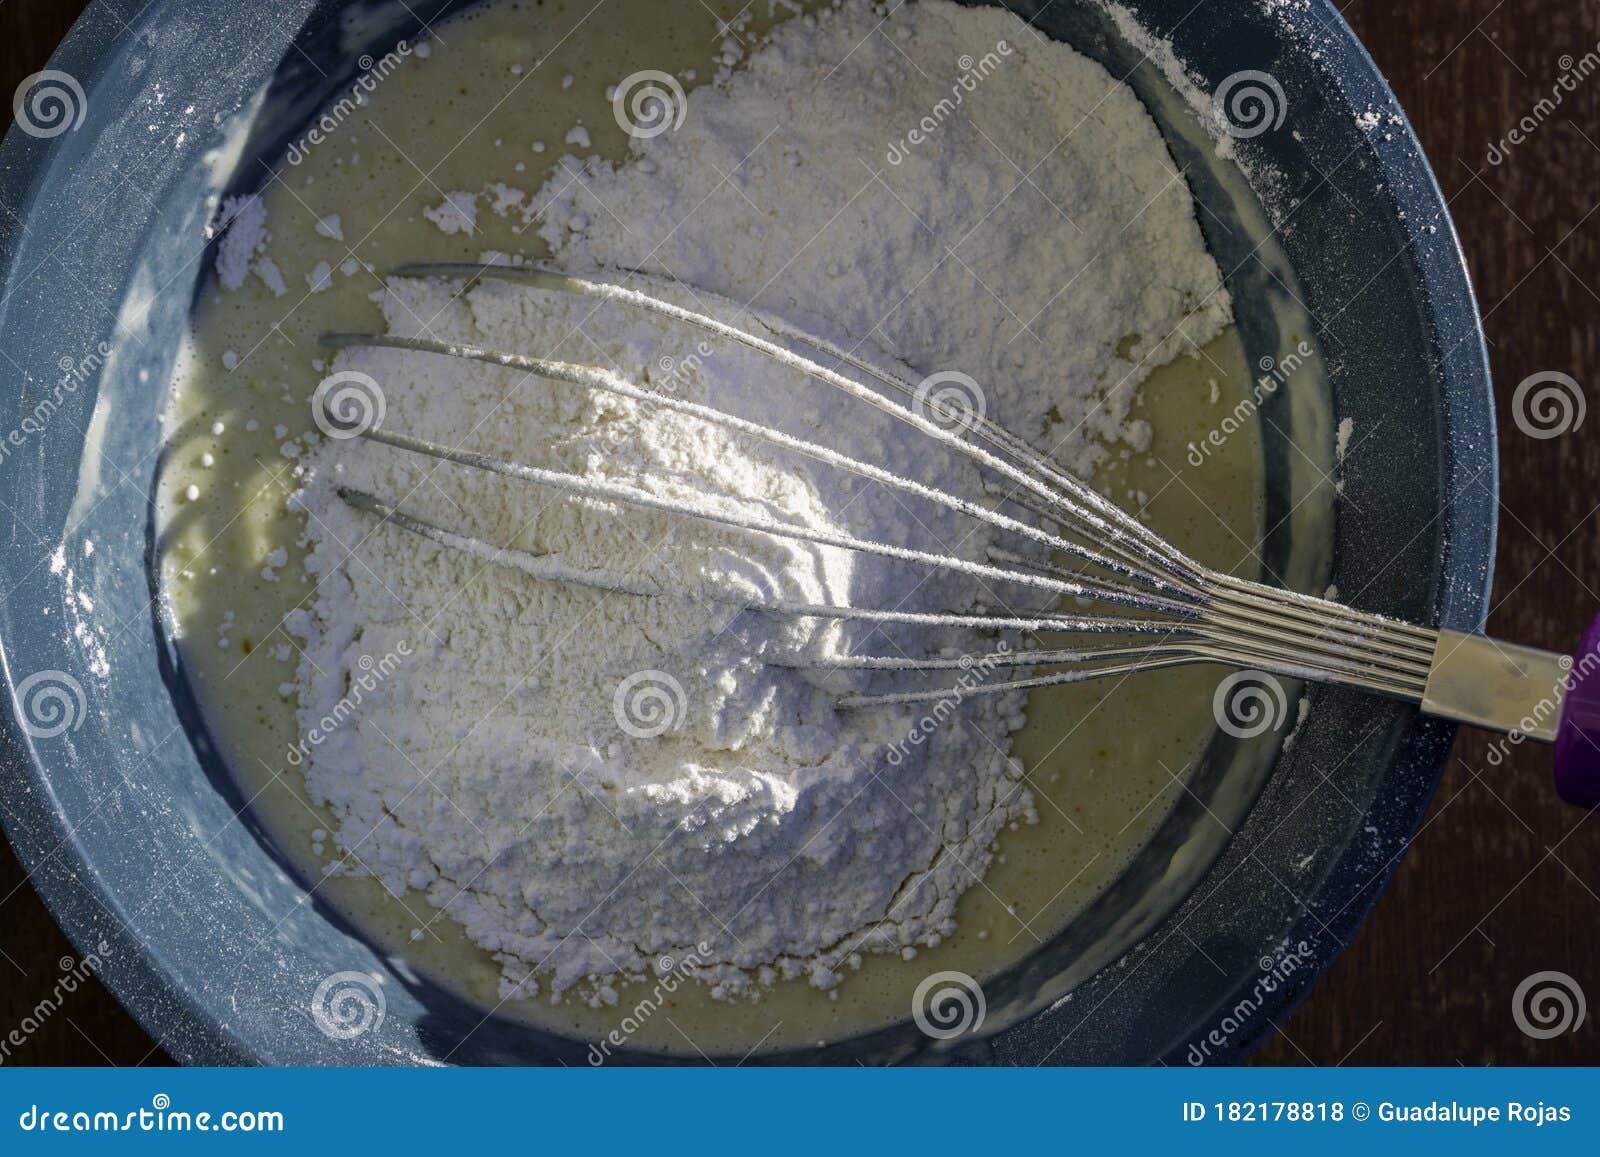 recipiente con harina para preparar algÃÂºn pastel o hot cakes